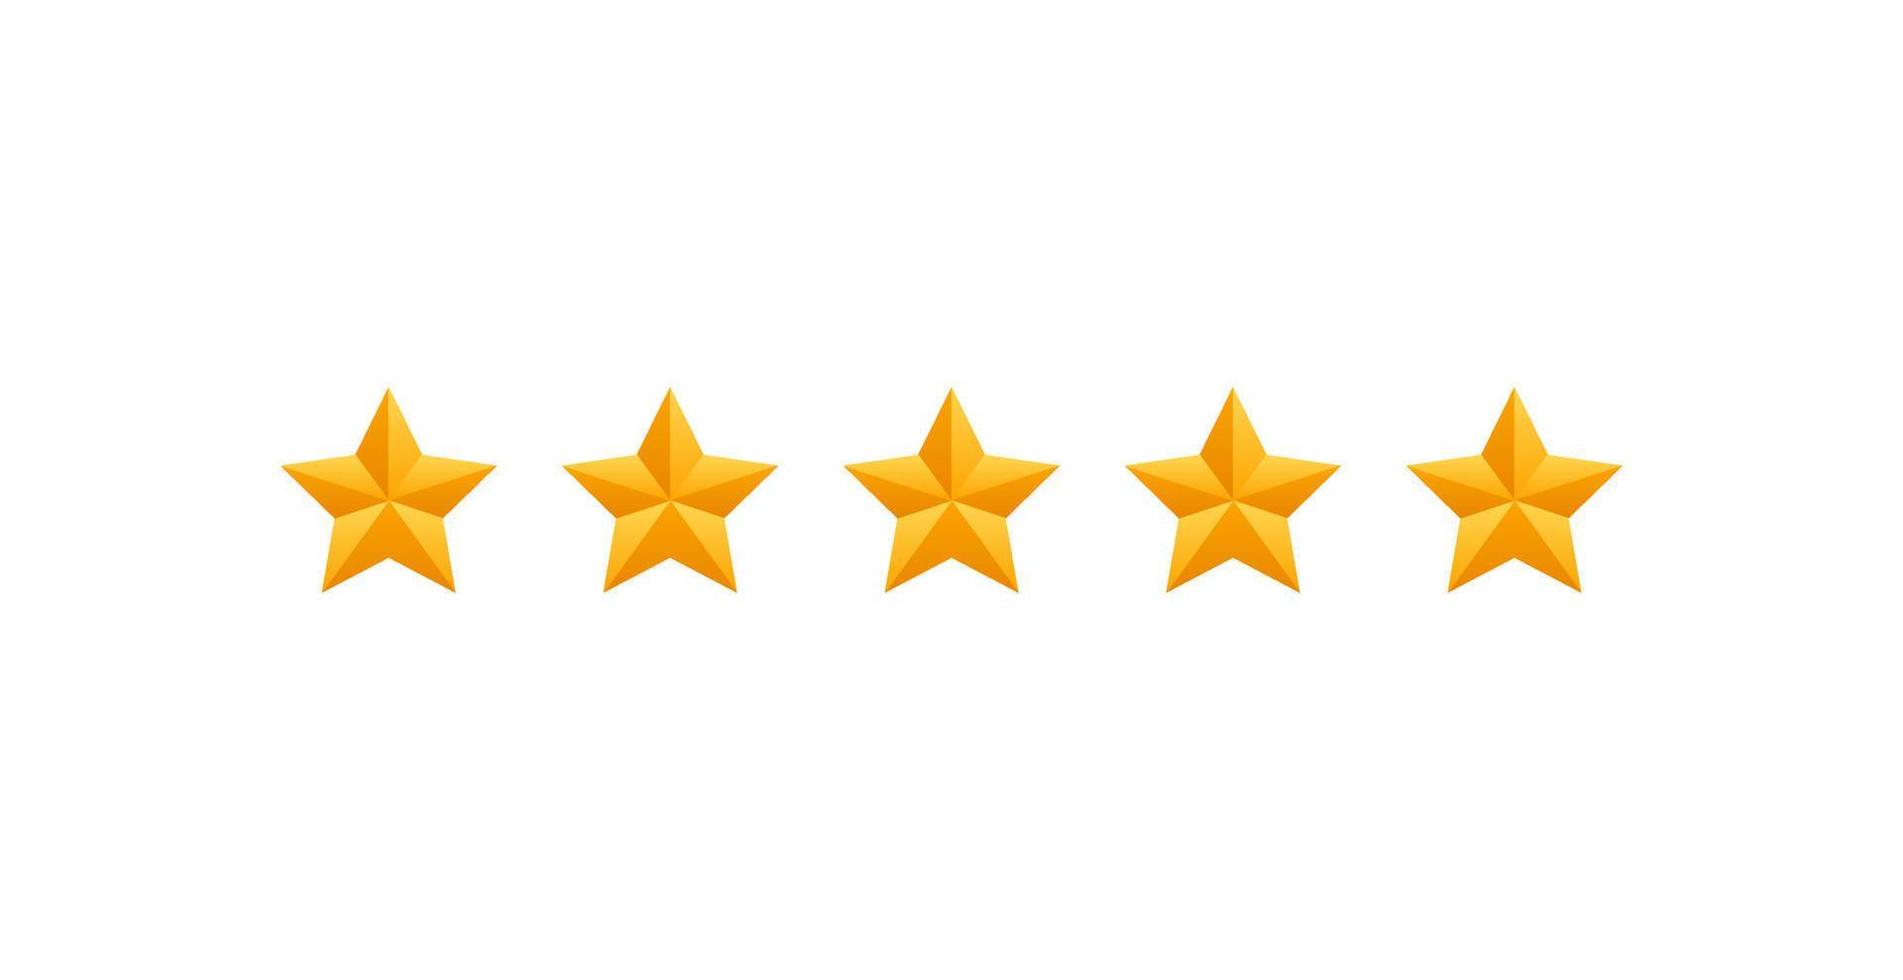 5 ster opnieuw bekijken. vijf goud sterren icoon - onderhoud tarief of kwaliteit terugkoppeling teken. vlak stijl vector illustratie.